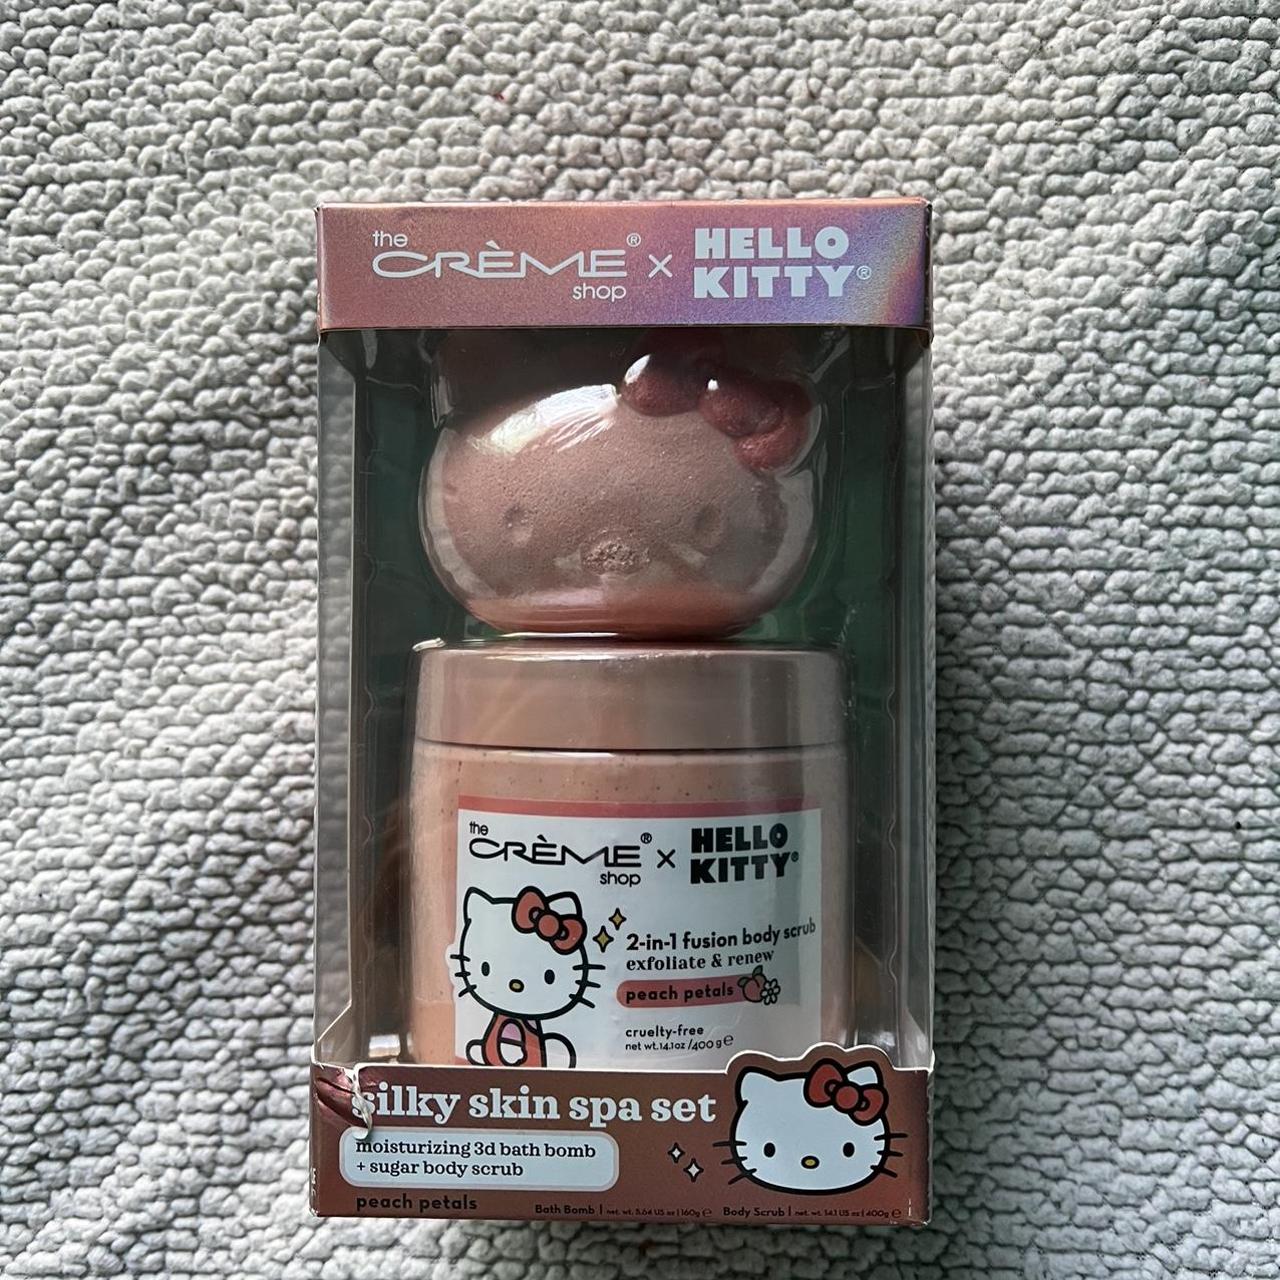 Hello Kitty x The Crème Shop Silky Skin Spa Set (Peach Petals)